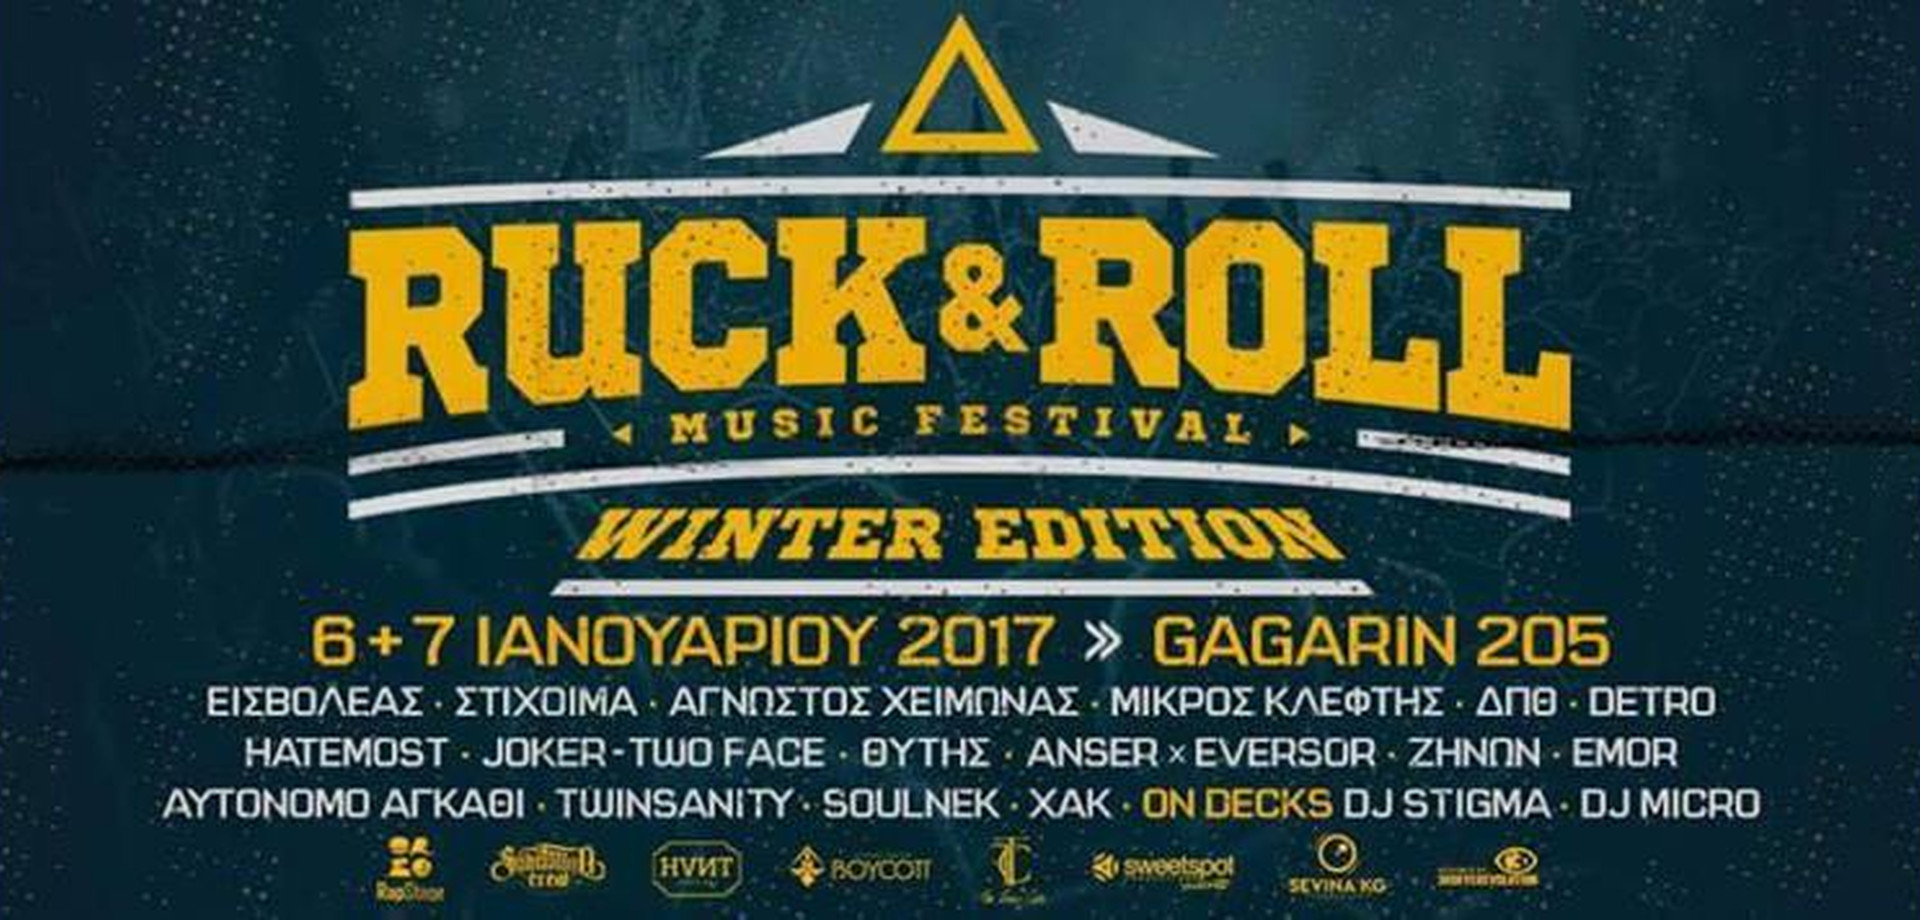 «Ruck n Roll Music Festival Winter Edition» στο Gagarin 205